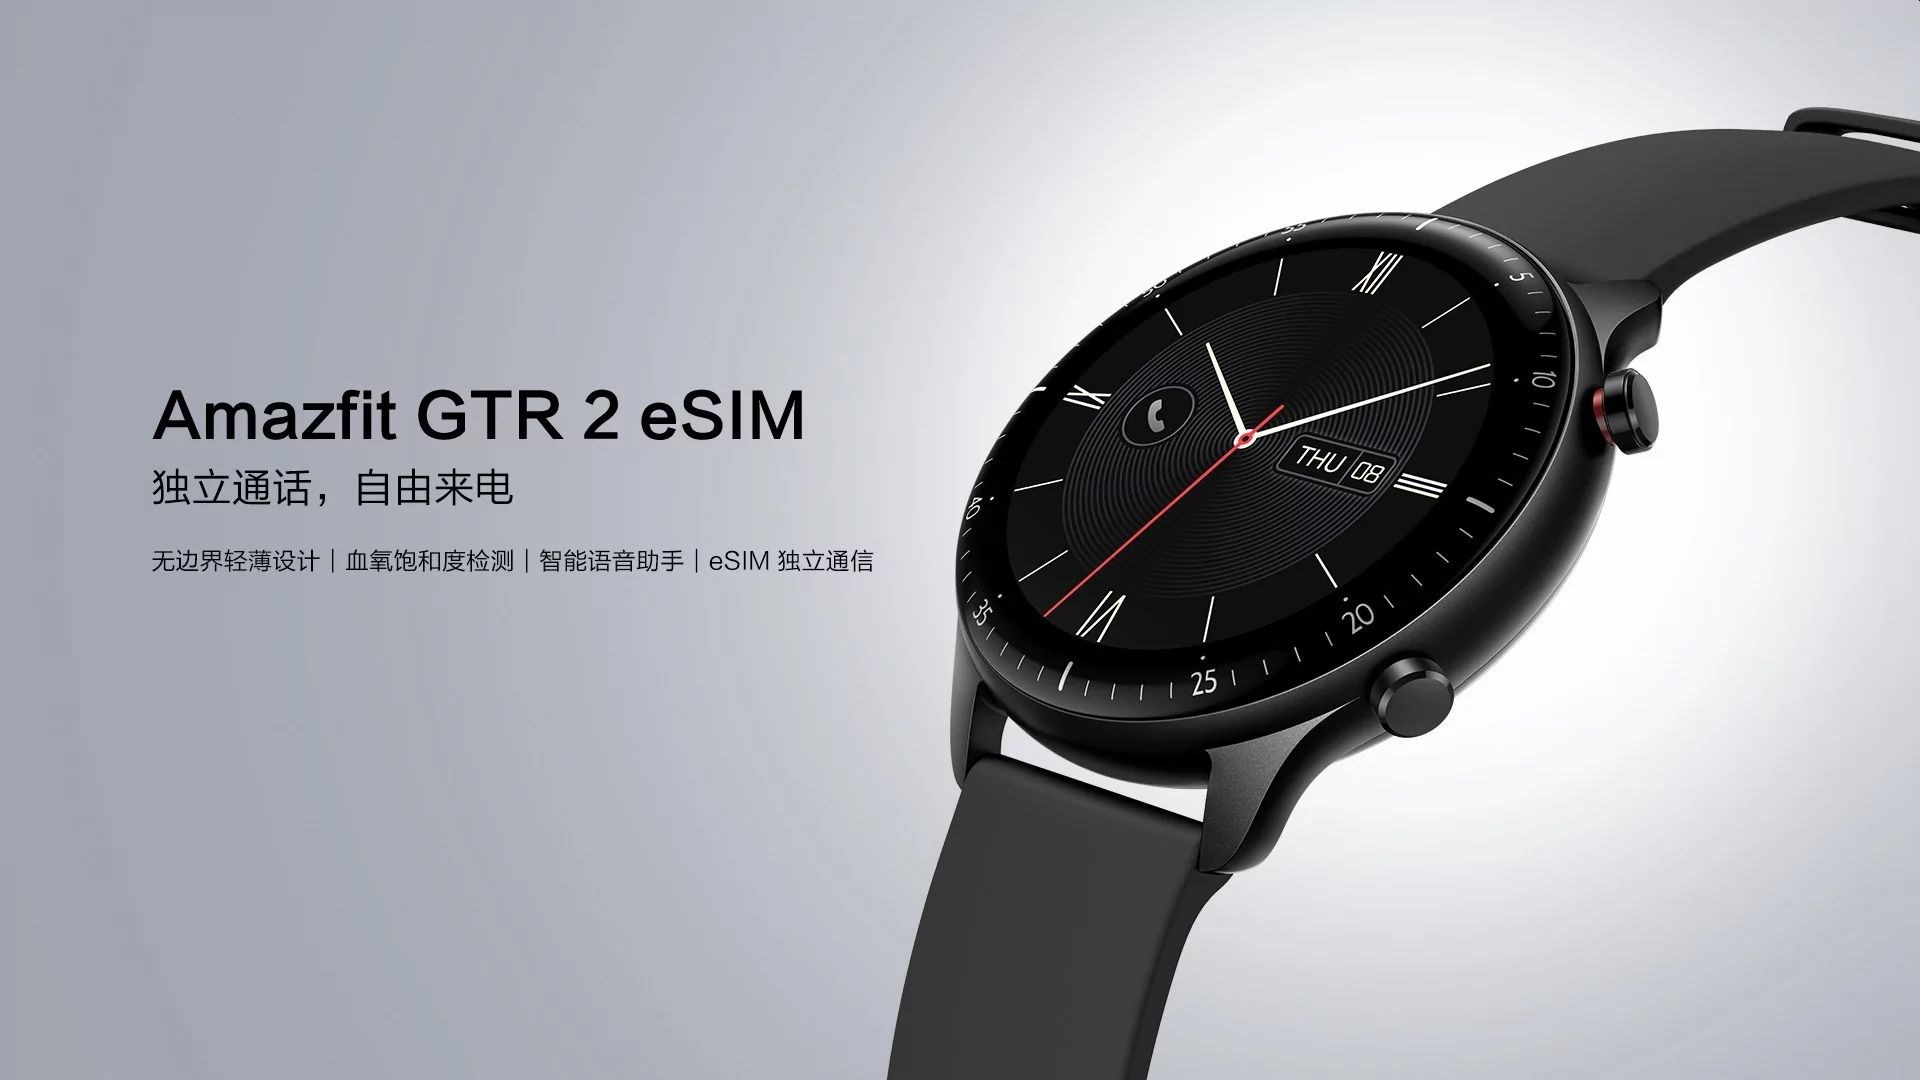 Akıllı telefon olmadan arama yapabilen akıllı saat Amazfit GTR 2 eSIM tanıtıldı